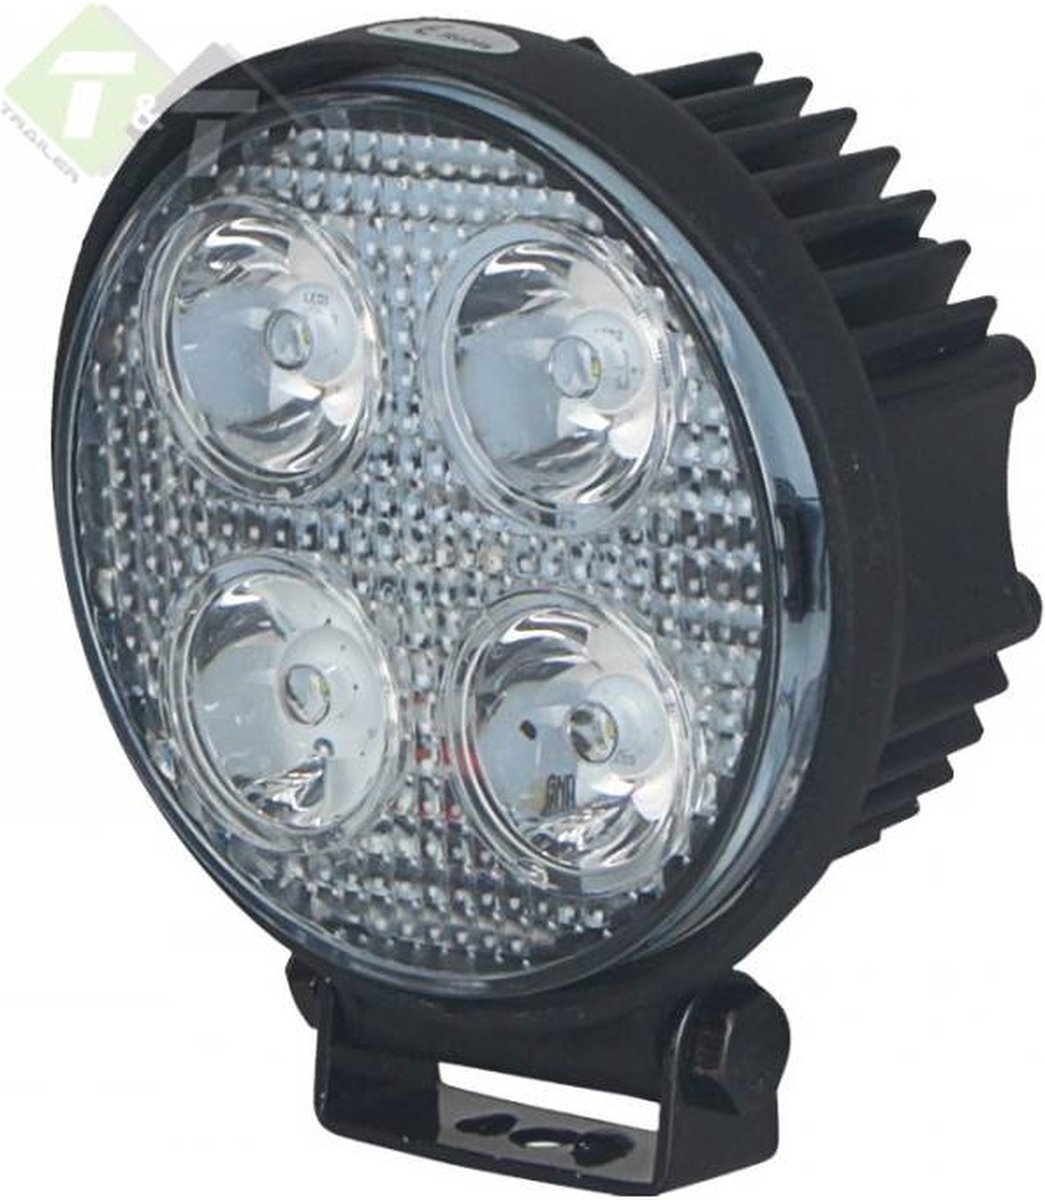 LED Werklamp - 4 LEDS - Rond - 16 Watt - Ledlamp - Bouwlamp